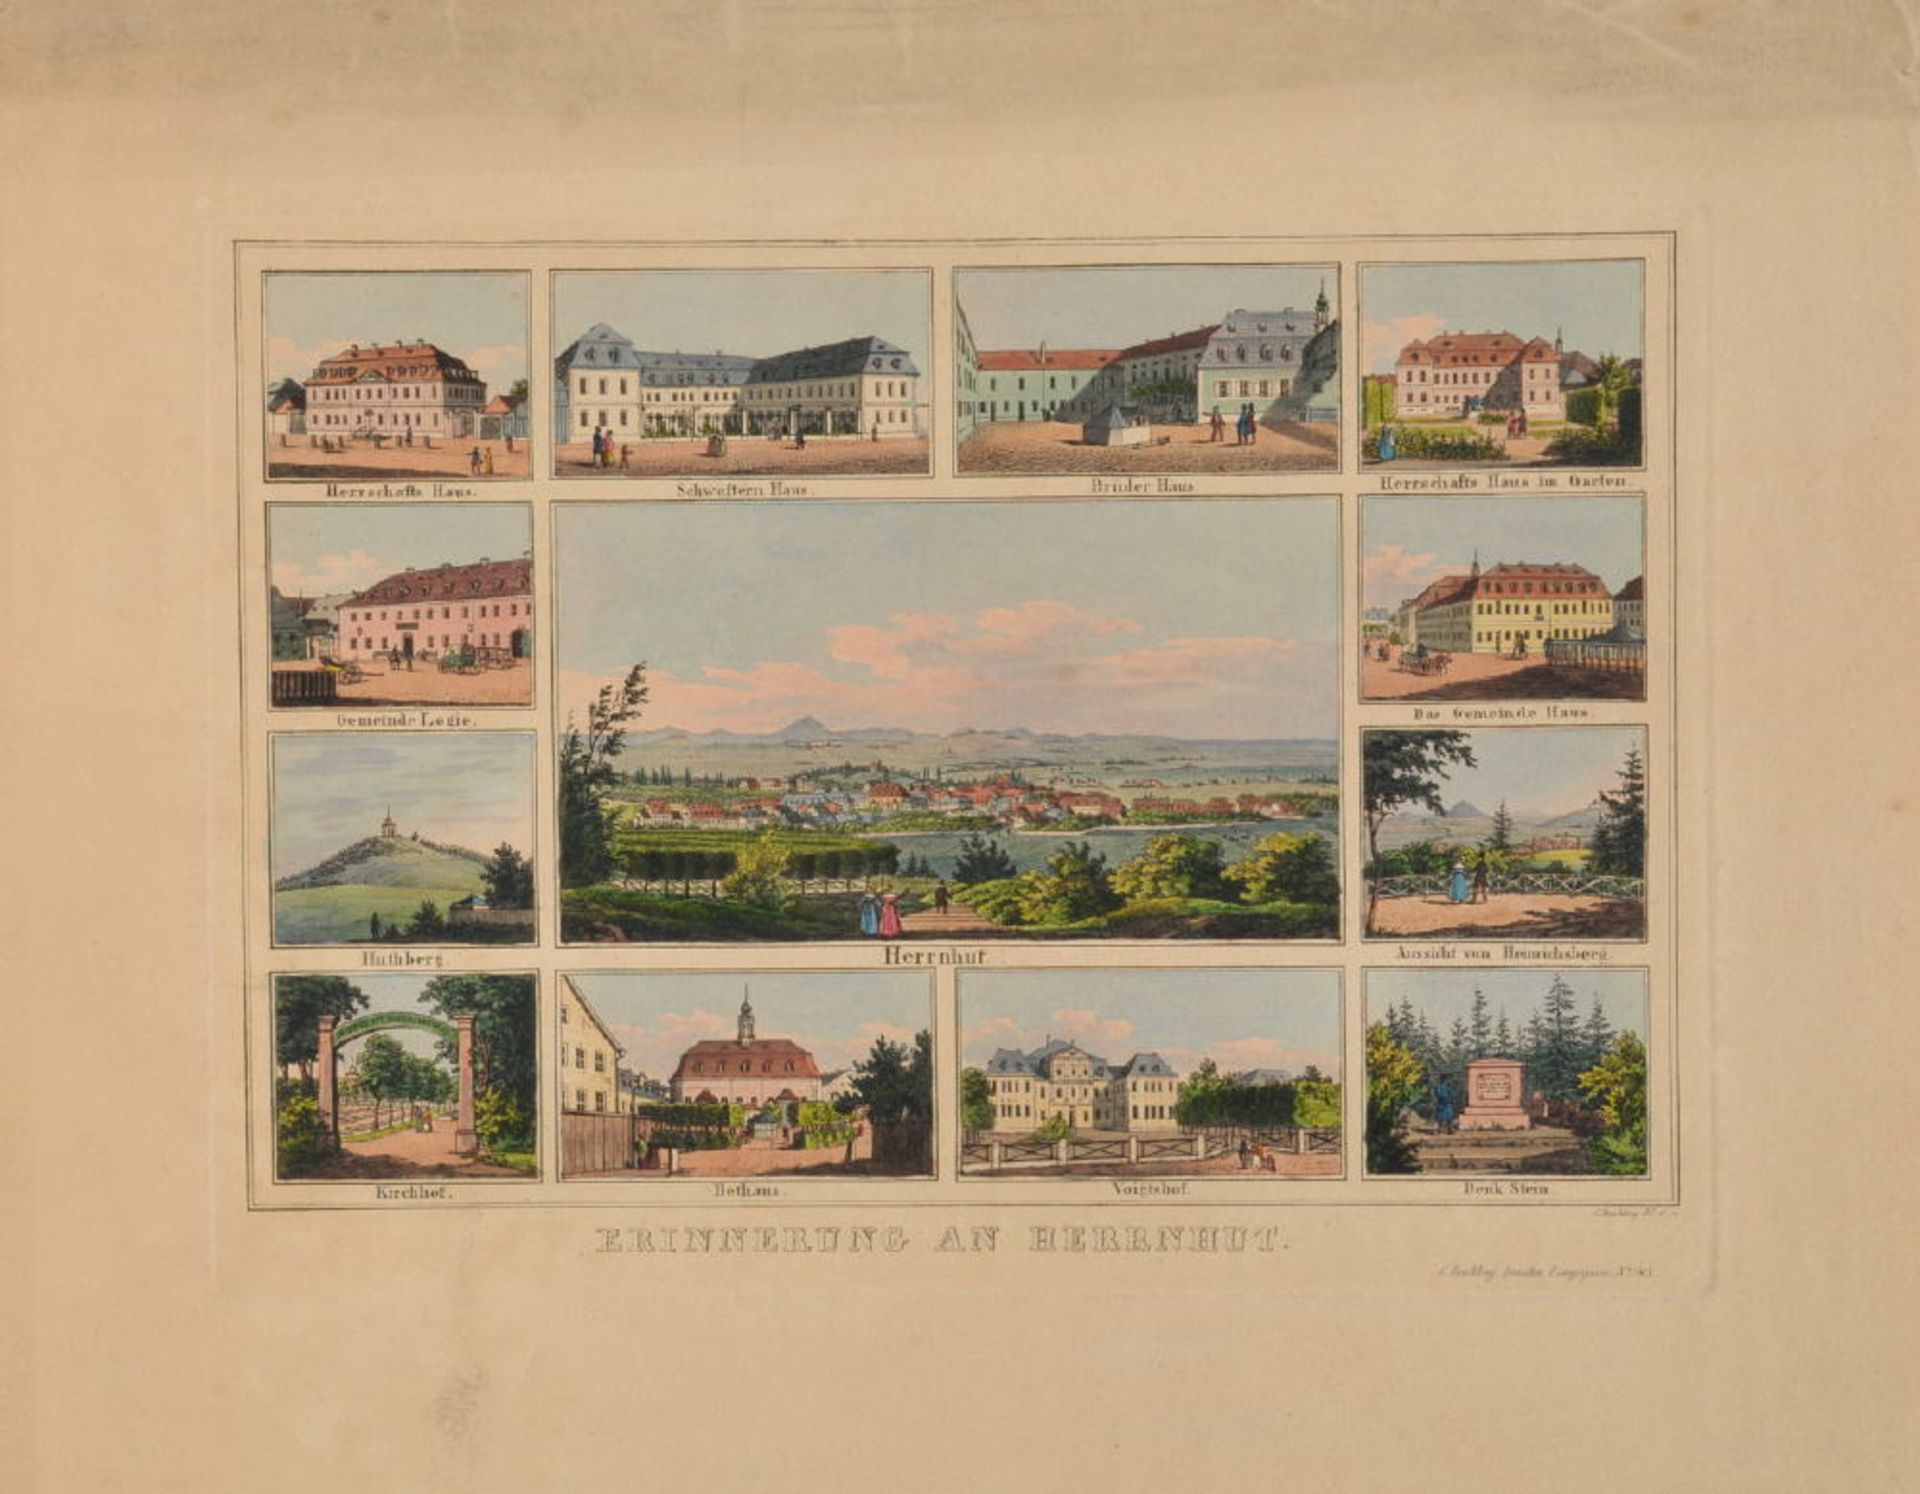 Herrnhut, SouvenirblattRadierung, handcolor., 16 x 23,5 cm, 13 Ansichten, von Beichling, 19. Jh.,